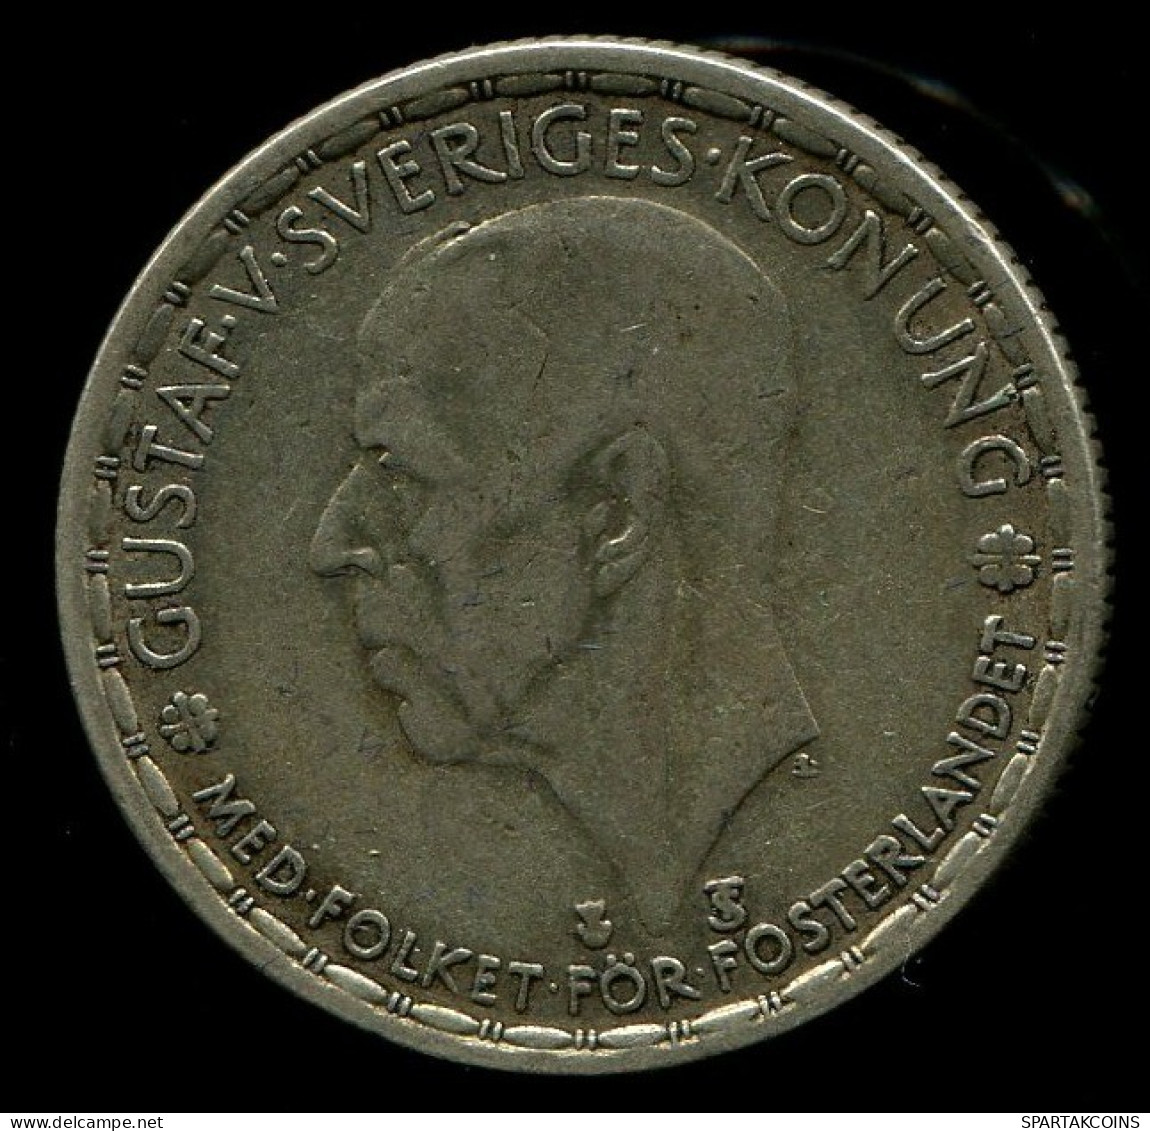 1 KRONA 1949 SWEDEN SILVER Coin #W10432.10.U.A - Schweden